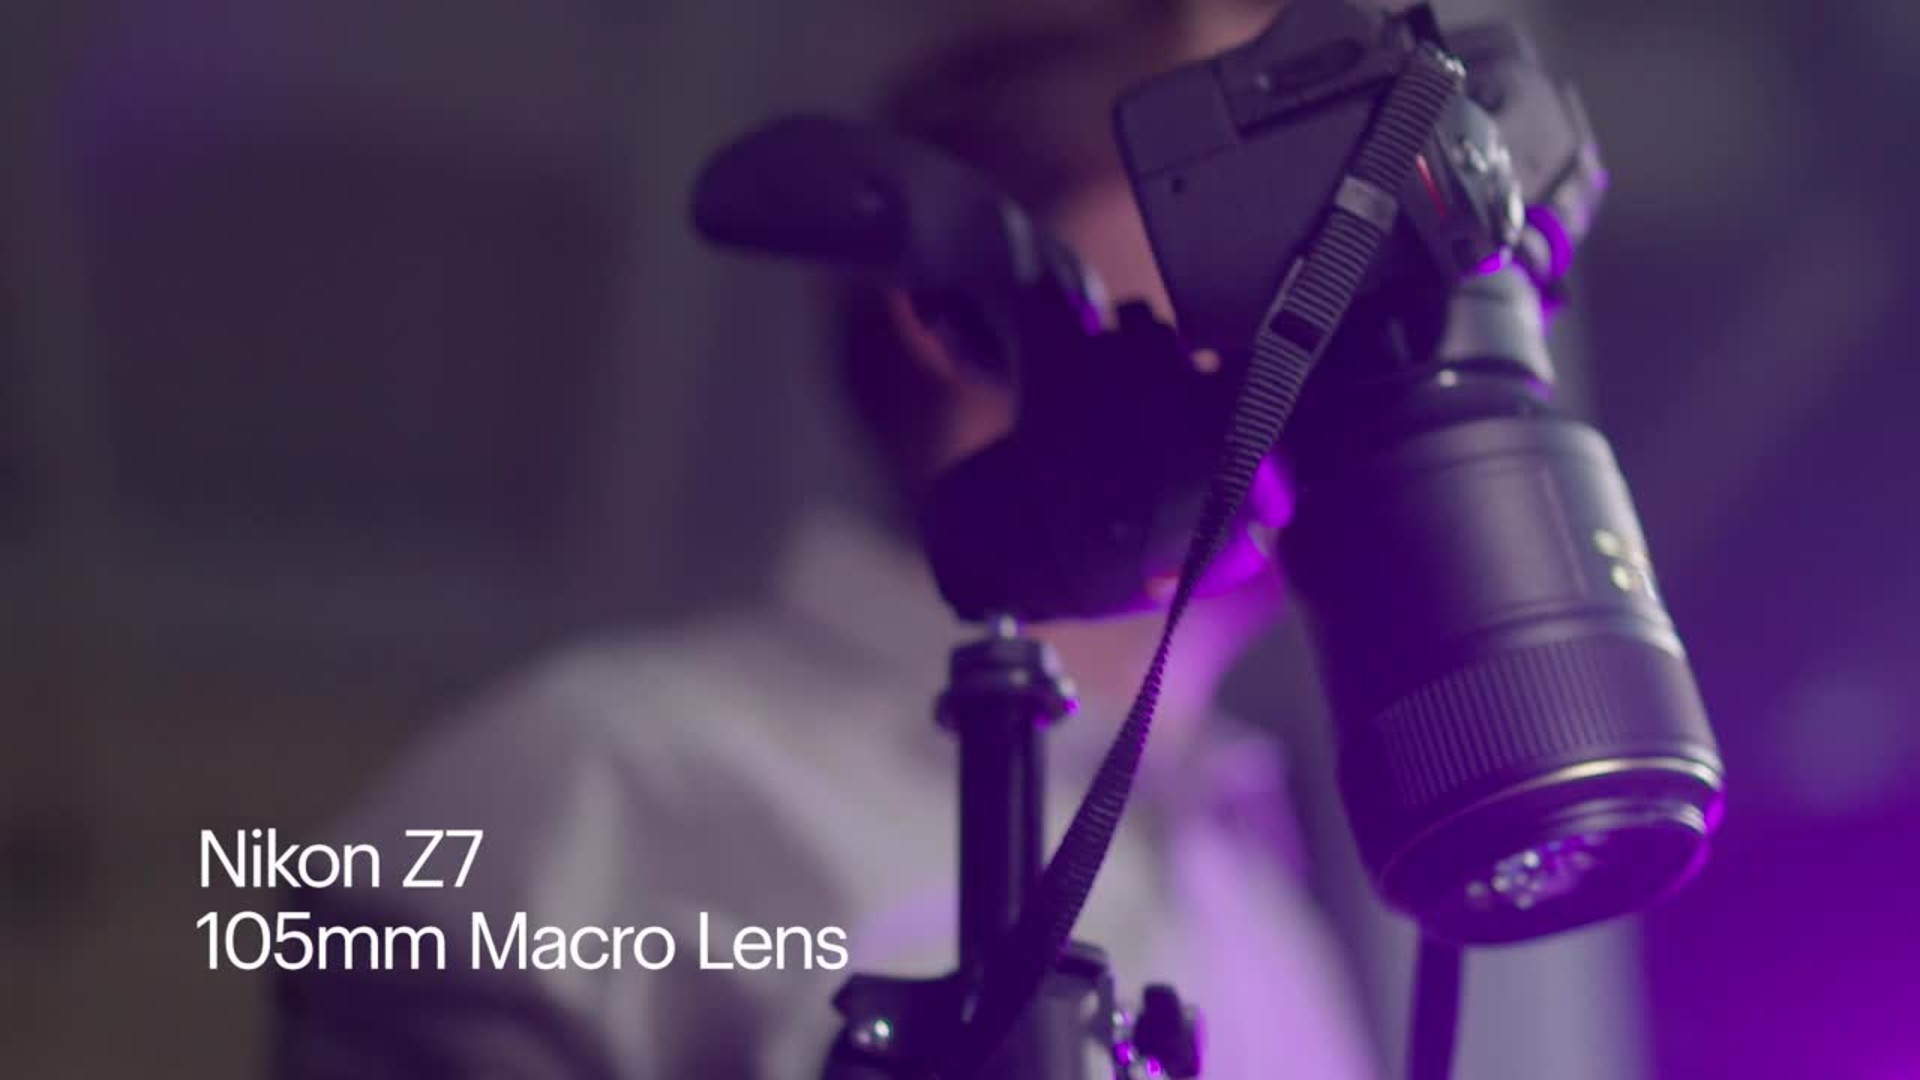 カメラ レンズ(単焦点) Best Buy: Nikon AF-S VR Micro-Nikkor 105mm f/2.8G IF-ED Macro Lens 